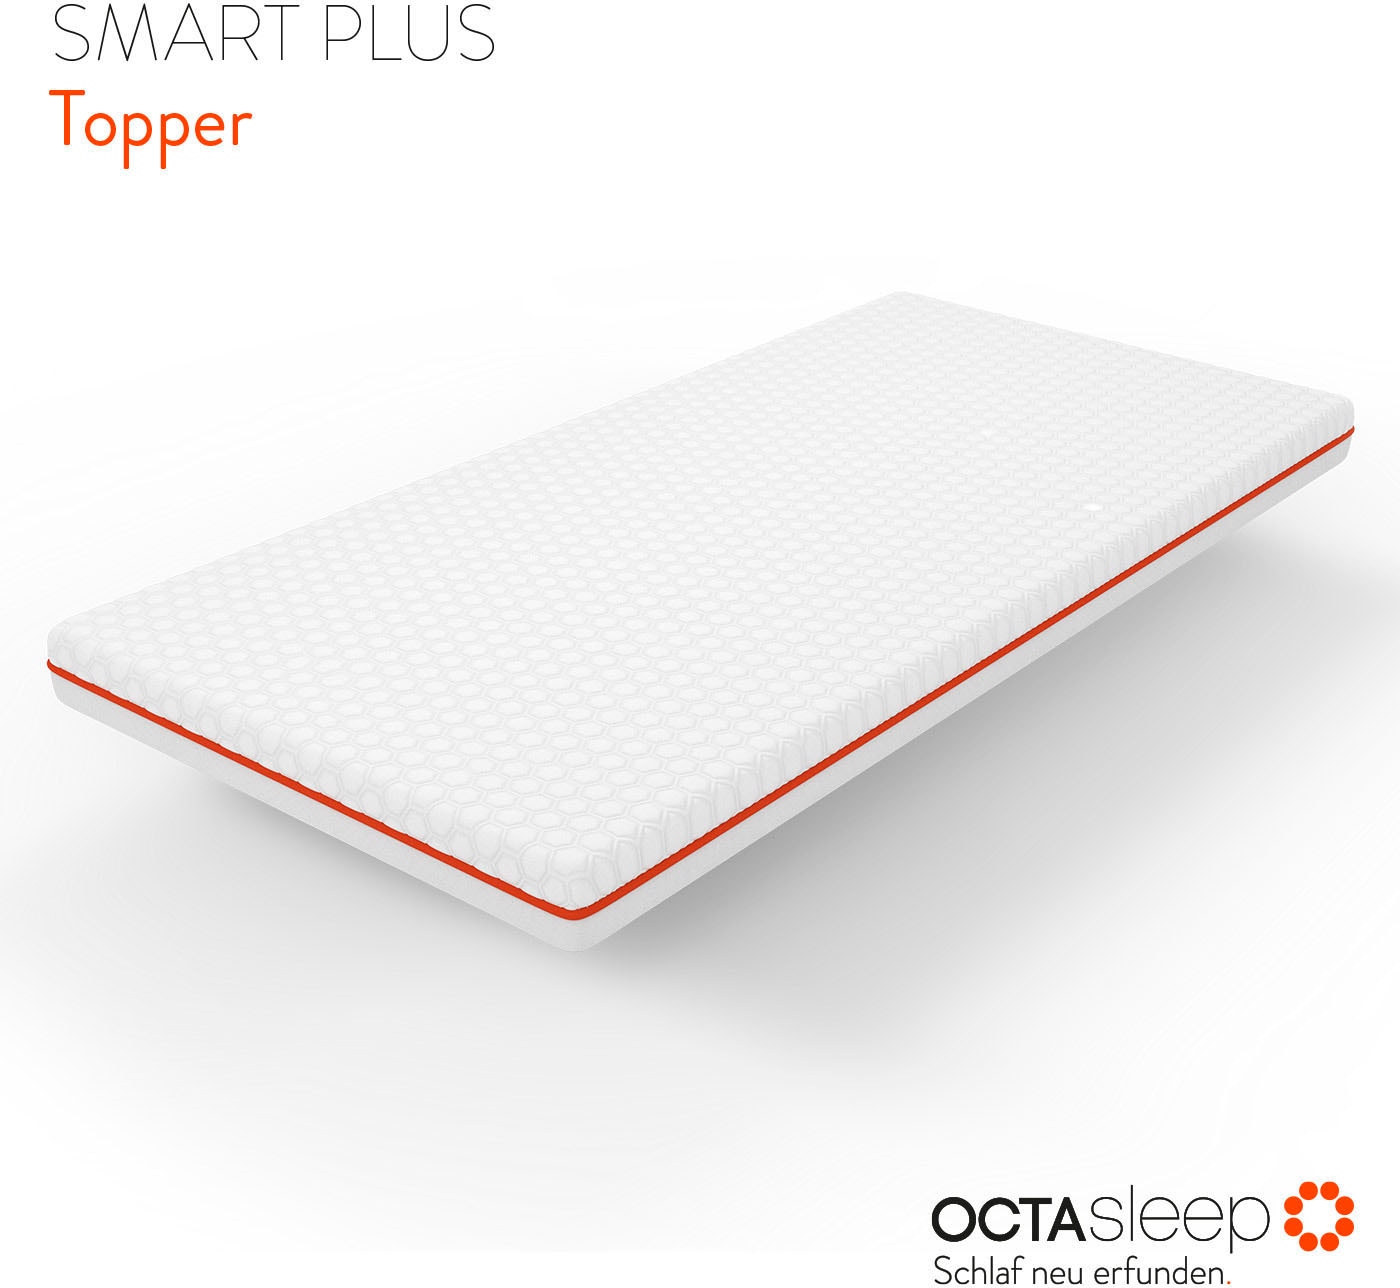 OCTAsleep Topper »Octasleep Smart Plus Topper«, (1 St.), OCTAspring® Aerospace Technologie